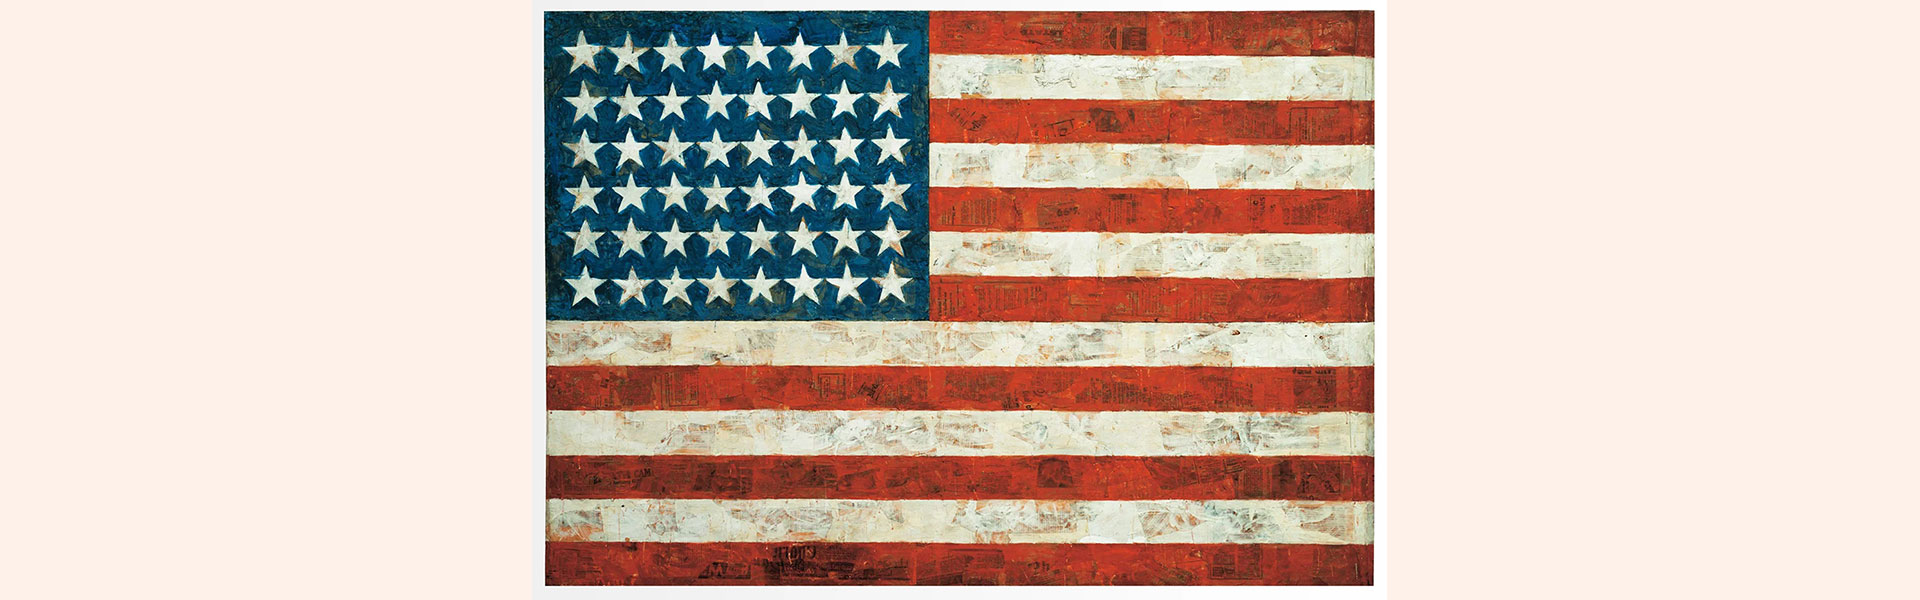 ''דגל'', ציור של ג'ספר ג'ונס, 1954־1955. אפשר לחוש ביד האמן / צילום: ויקיפדיה